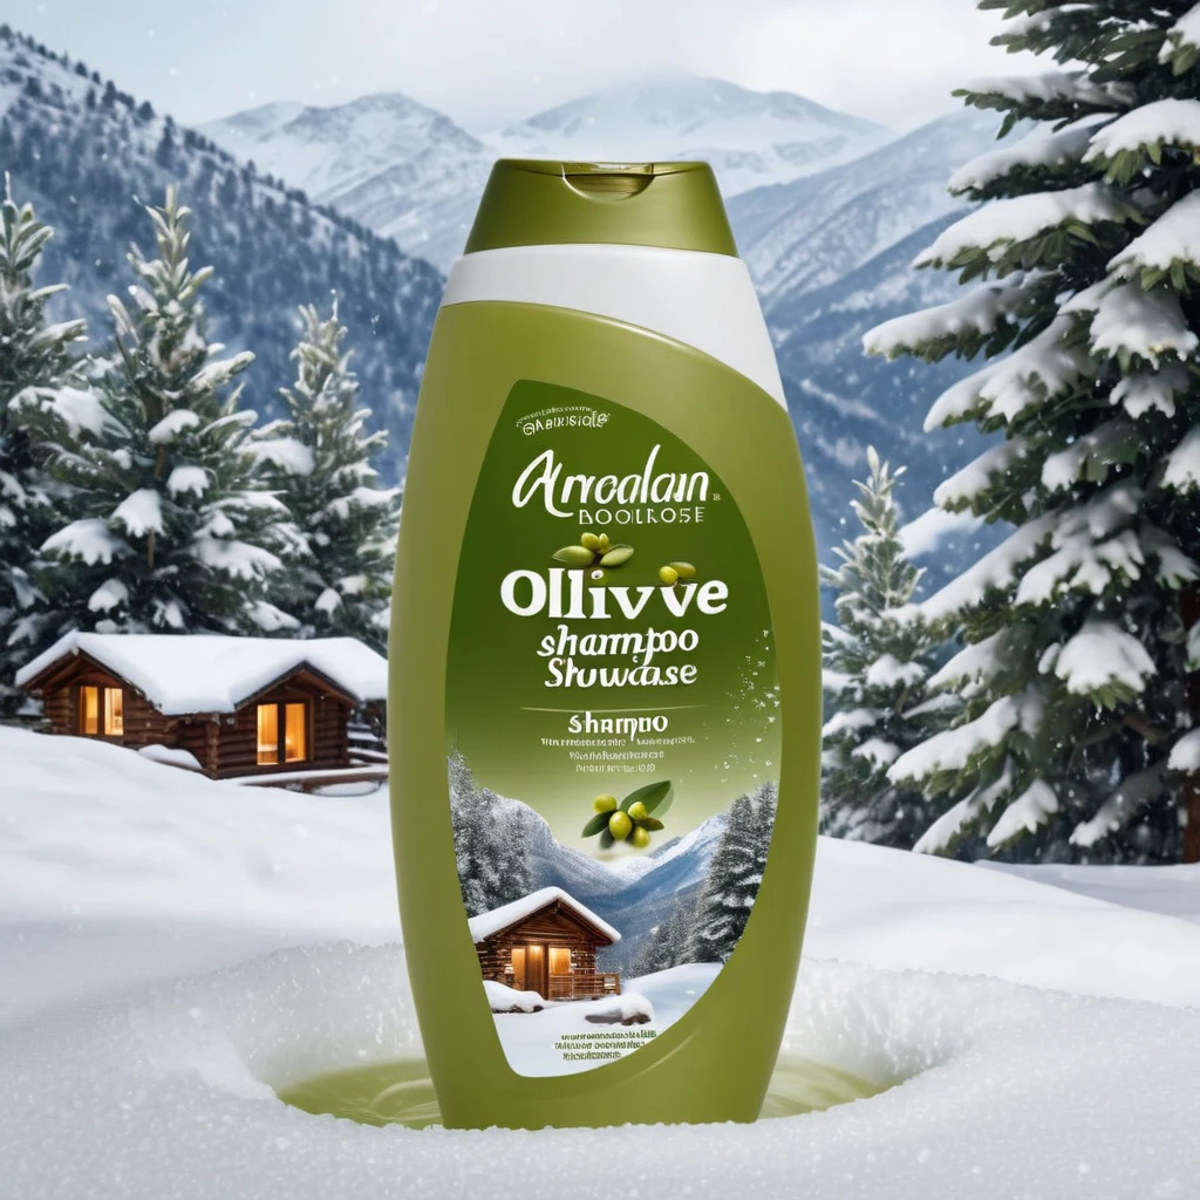 (shampoo showcase) <lora:58_shampoo_showcase:1.1>
Olive background,
high quality, professional, highres, amazing, dramatic...